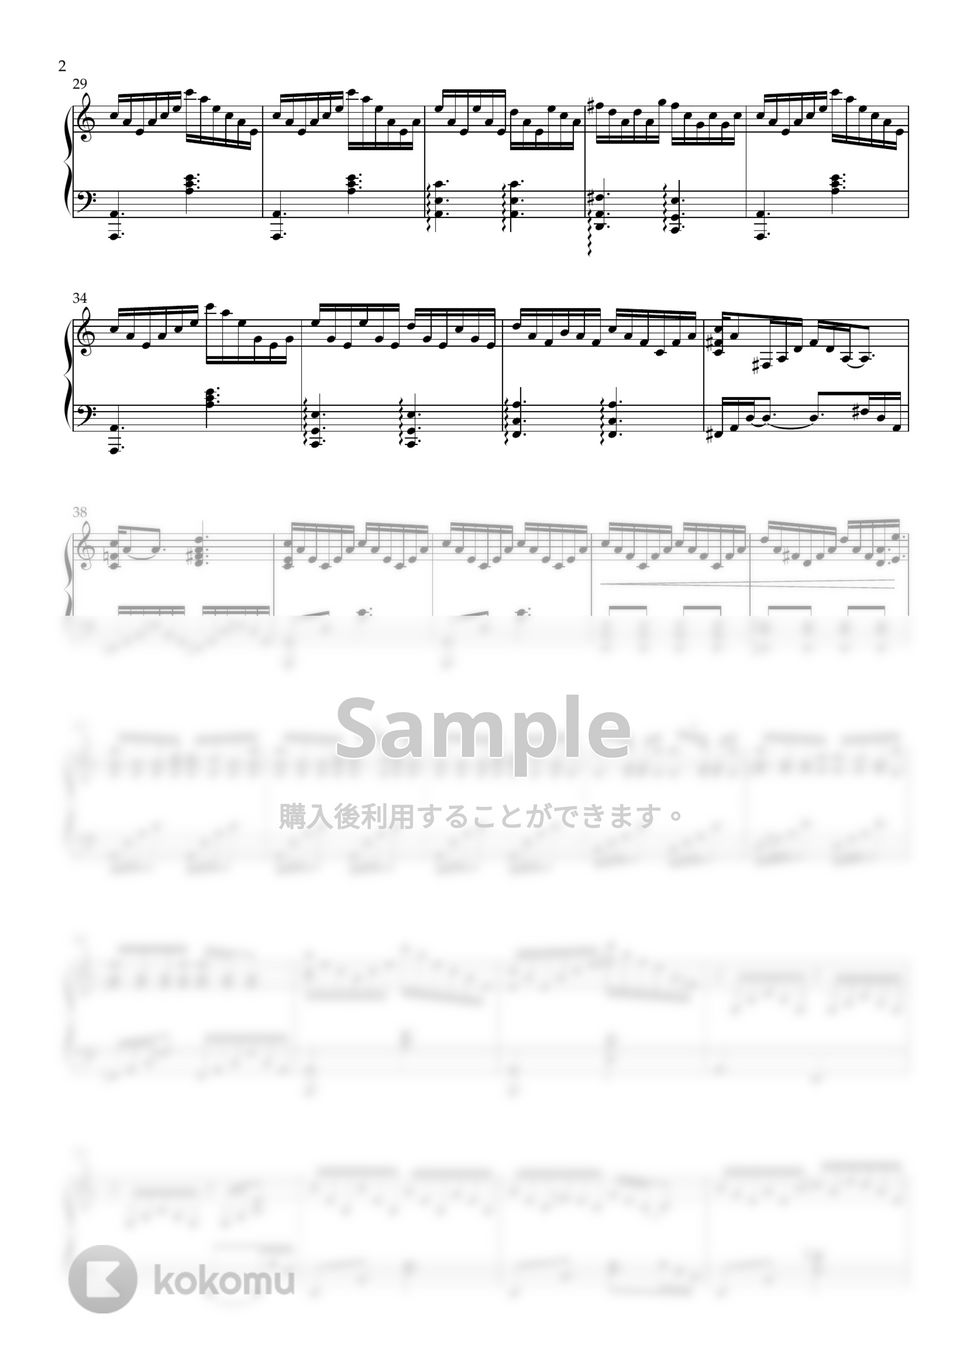 アリス・イン・ワンダーランド／時間の旅 - Alice's Theme (PIANO SOLO) by CLOUD LADDER 구름사다리뮤직